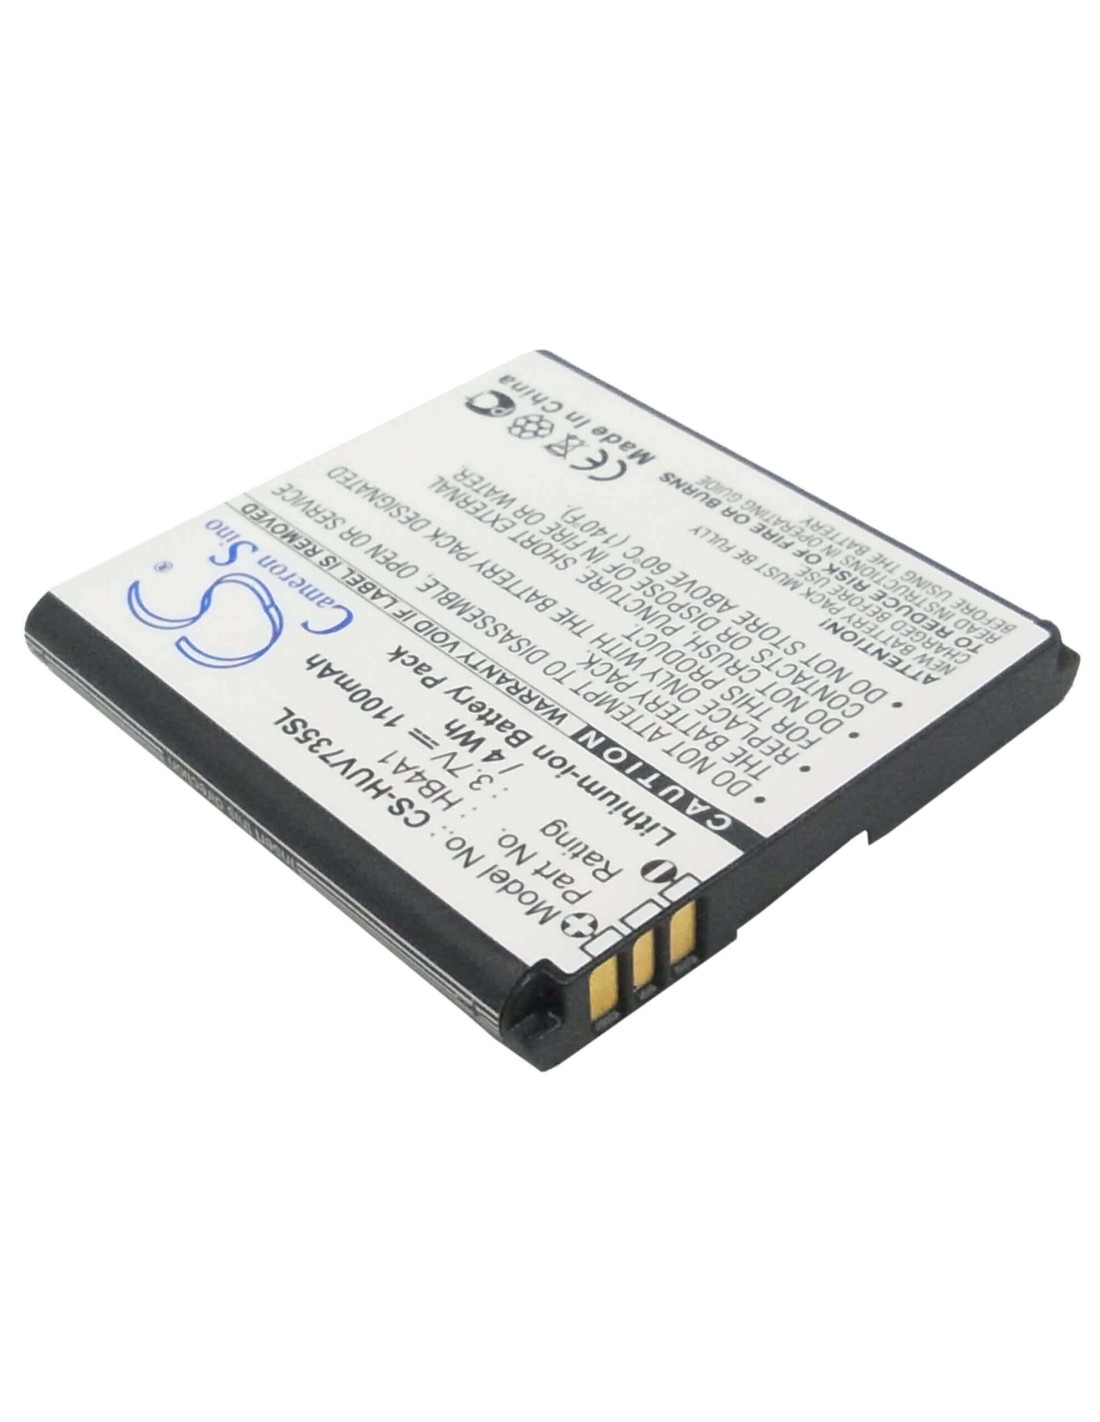 Battery for Huawei U6100, V735, V736 3.7V, 1100mAh - 4.07Wh